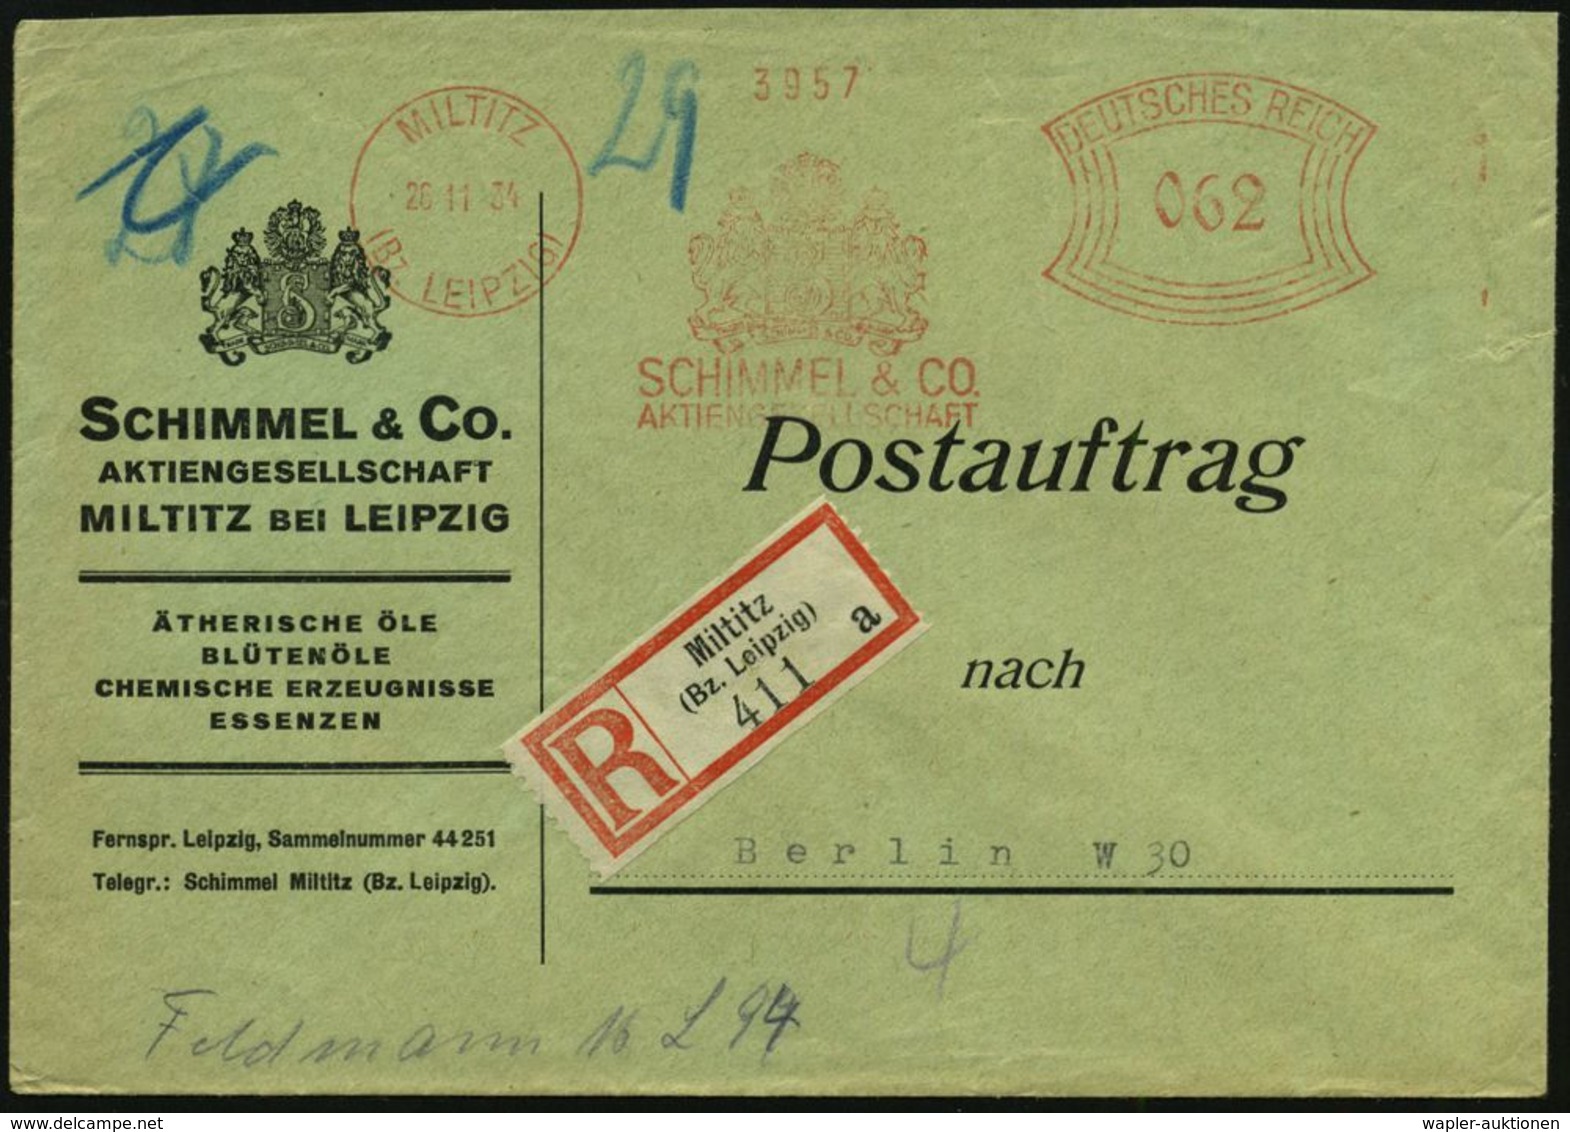 HOMÖOPATHIE / HEILPFLANZEN : MILTITZ/ (Bz.LEIPZIG)/ SCHIMMEL & CO/ AG 1934 (26.11.) AFS 062 Pf. (2 Wappenlöwen M.Monogr. - Médecine